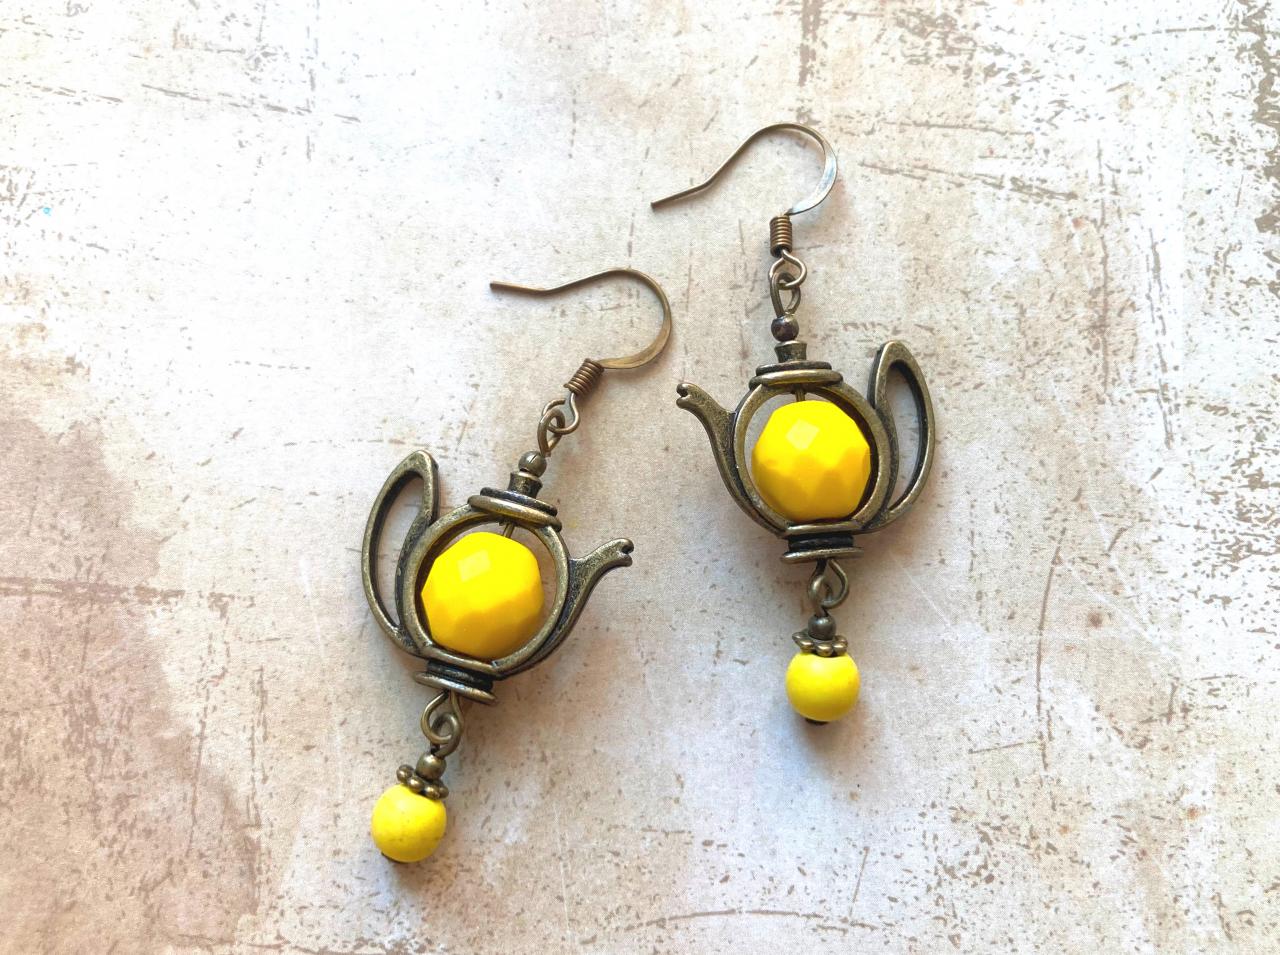 Fun Teapot Earrings With Yellow Glass Beads, Selma Dreams